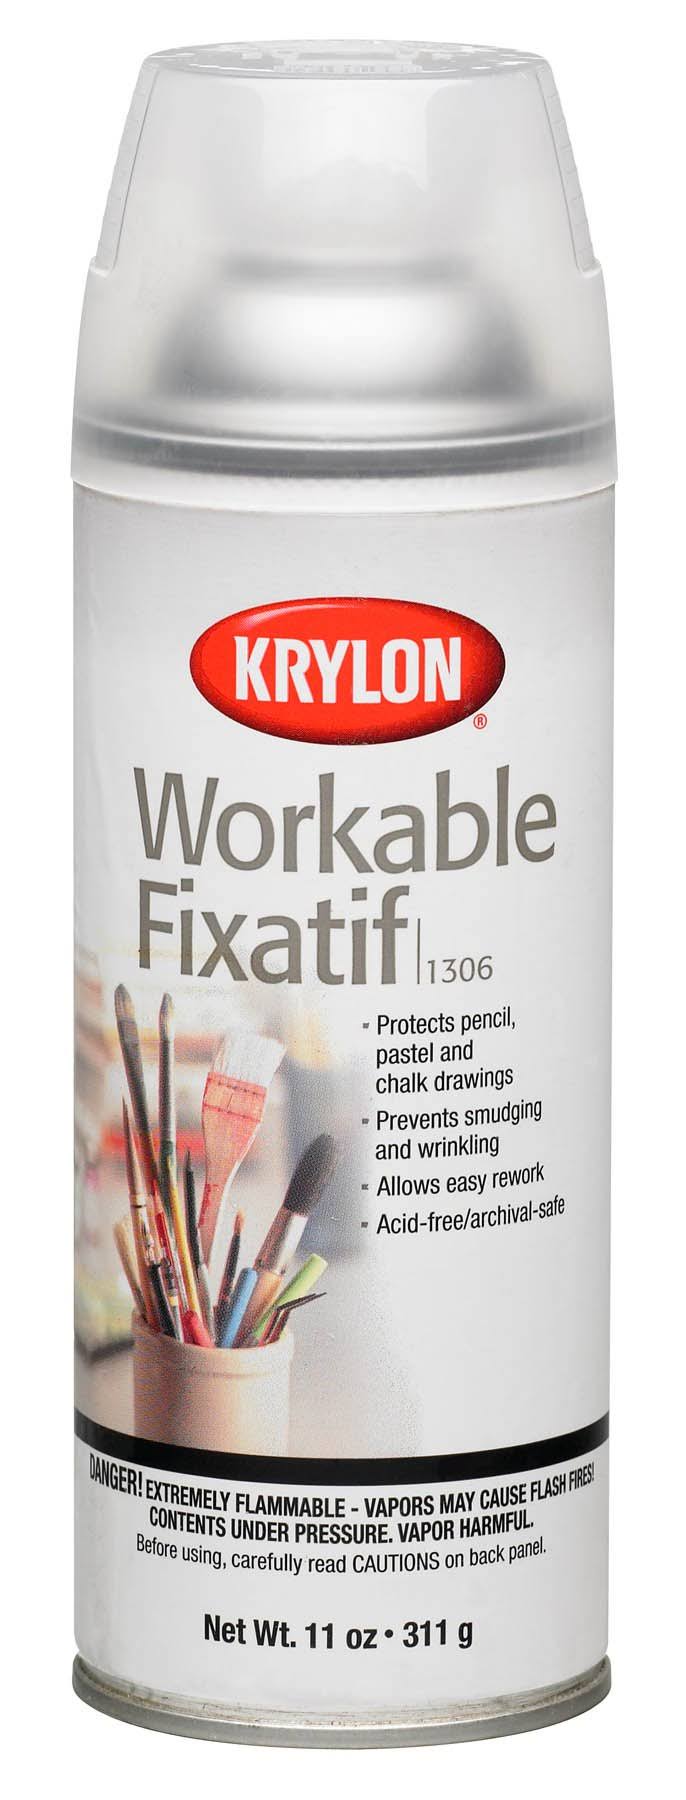 Krylon Workable Fixatif Spray - Clear, 11 Oz